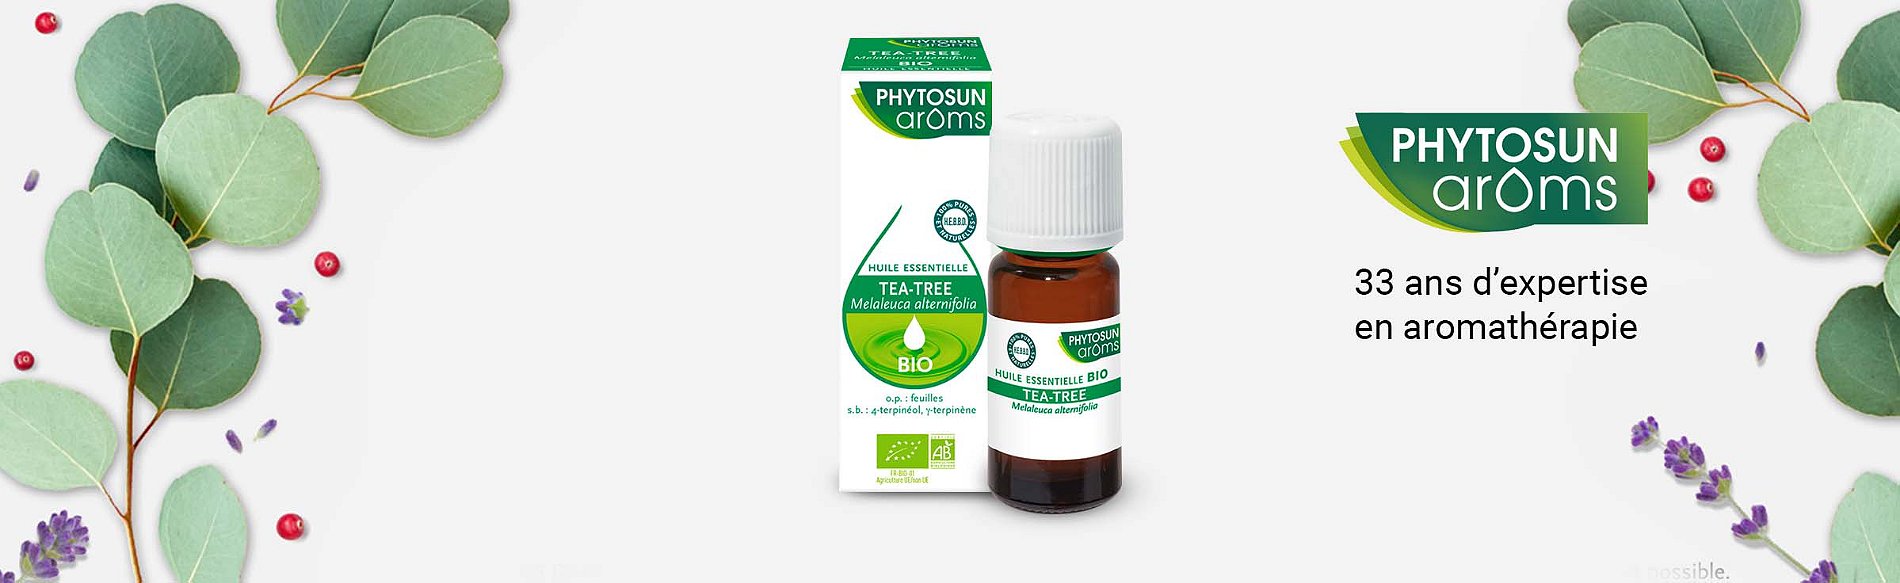 Phytosun Aroms : soins, compléments à base de plantes